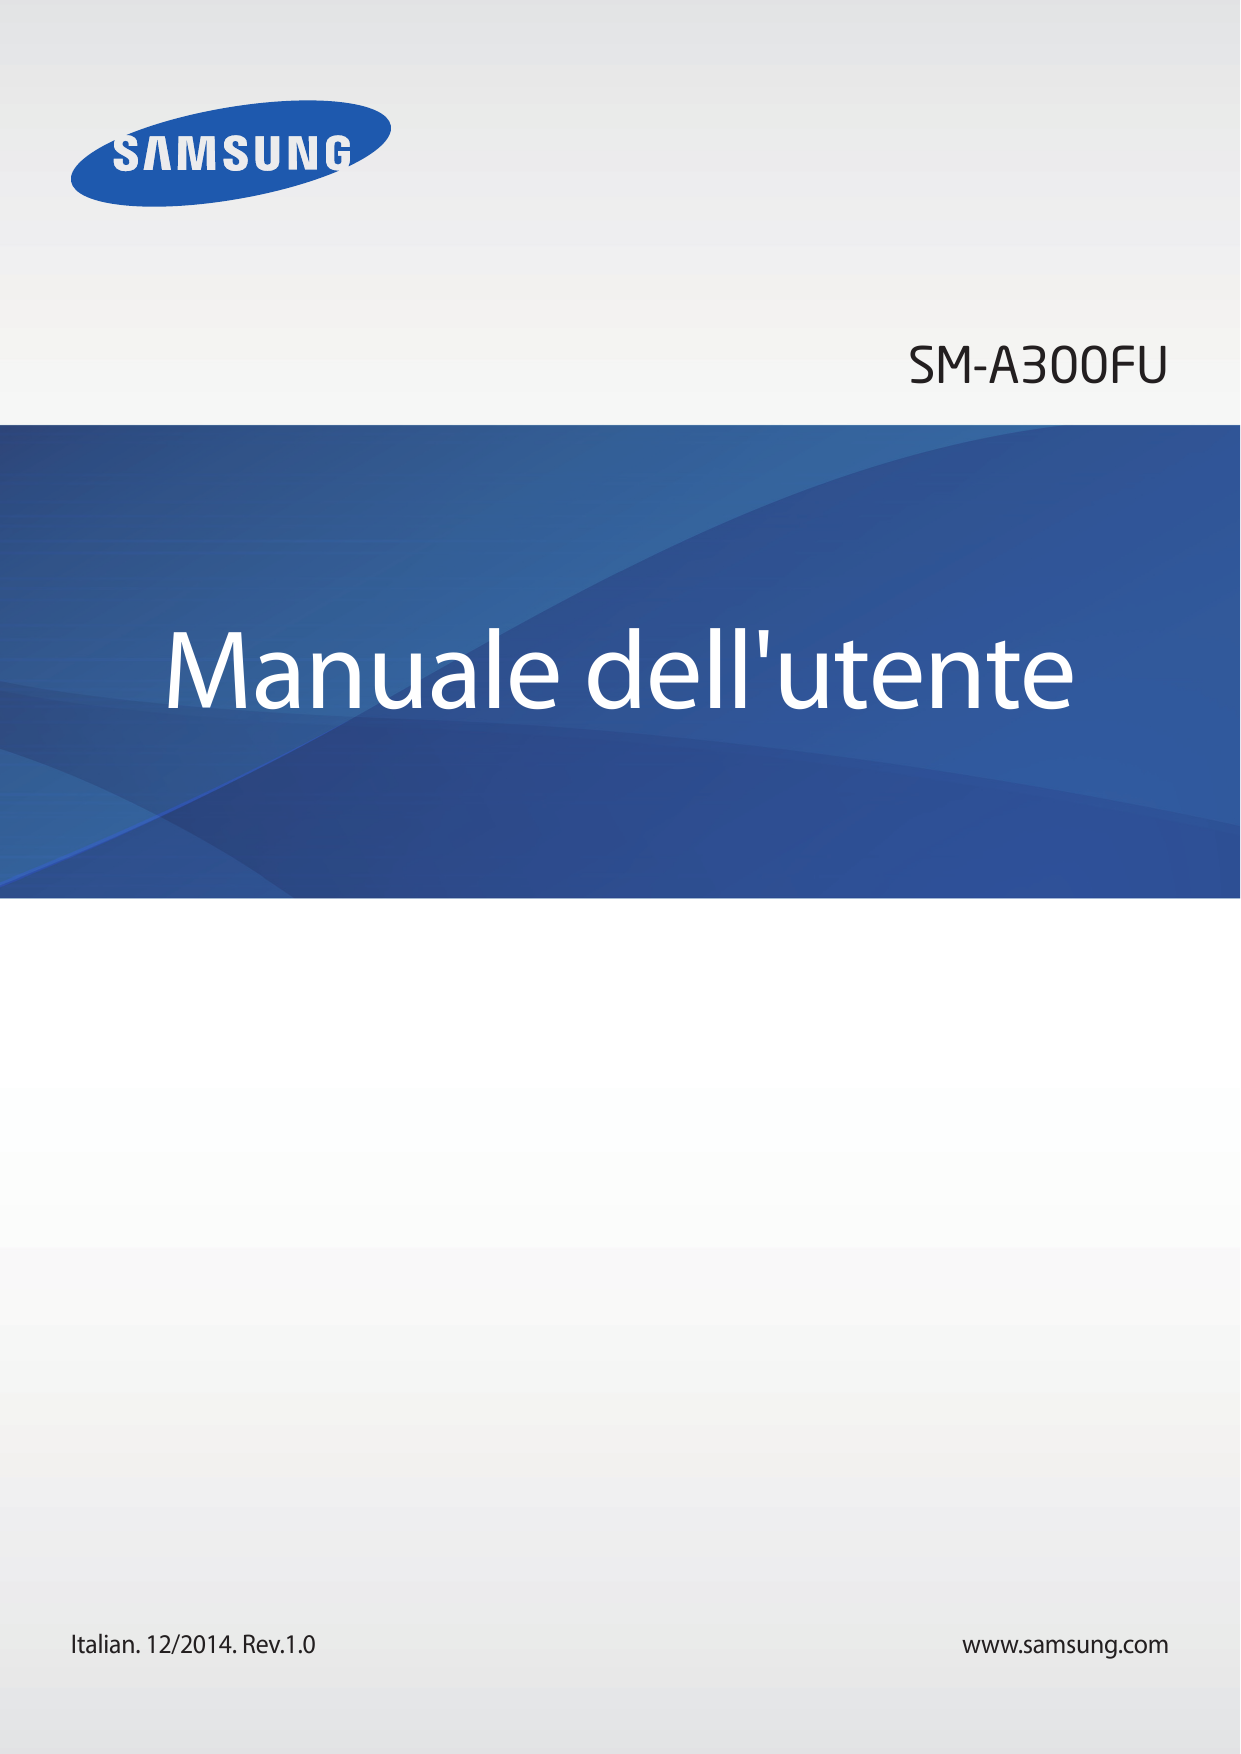 SM-A300FUManuale dell'utenteItalian. 12/2014. Rev.1.0www.samsung.com